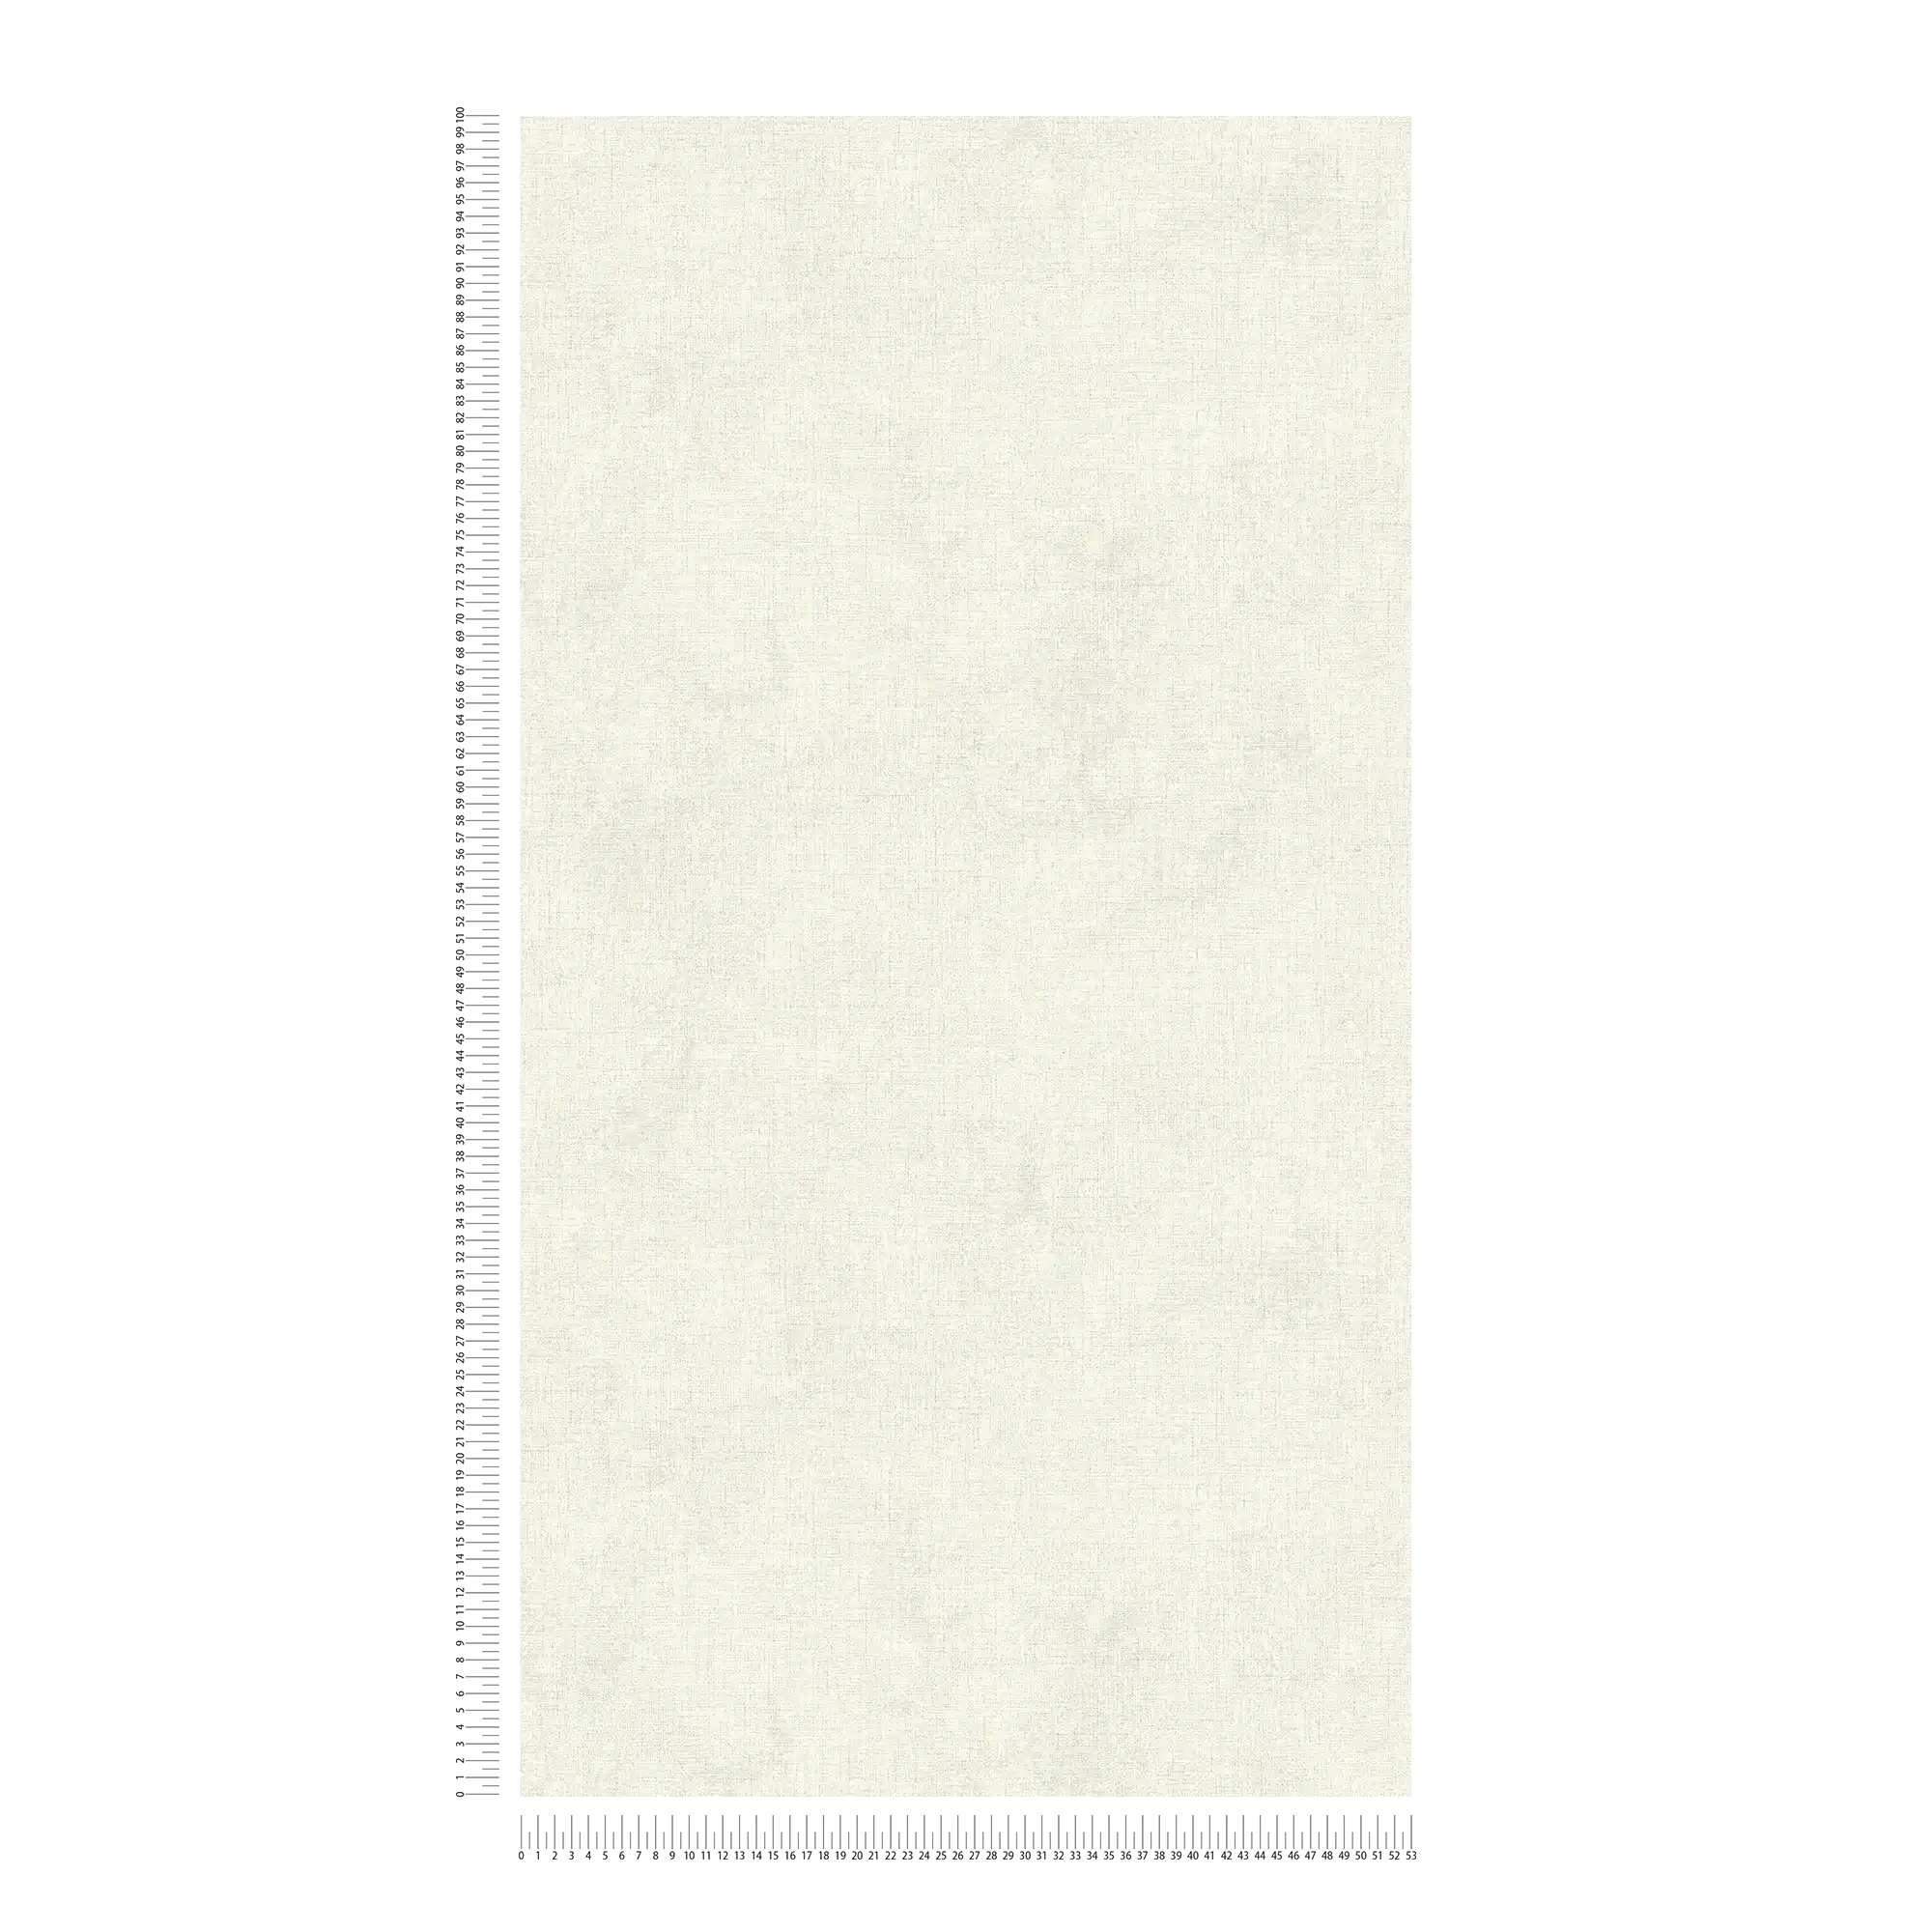             Carta da parati in tessuto non tessuto a tinta unita con aspetto tessile - crema
        